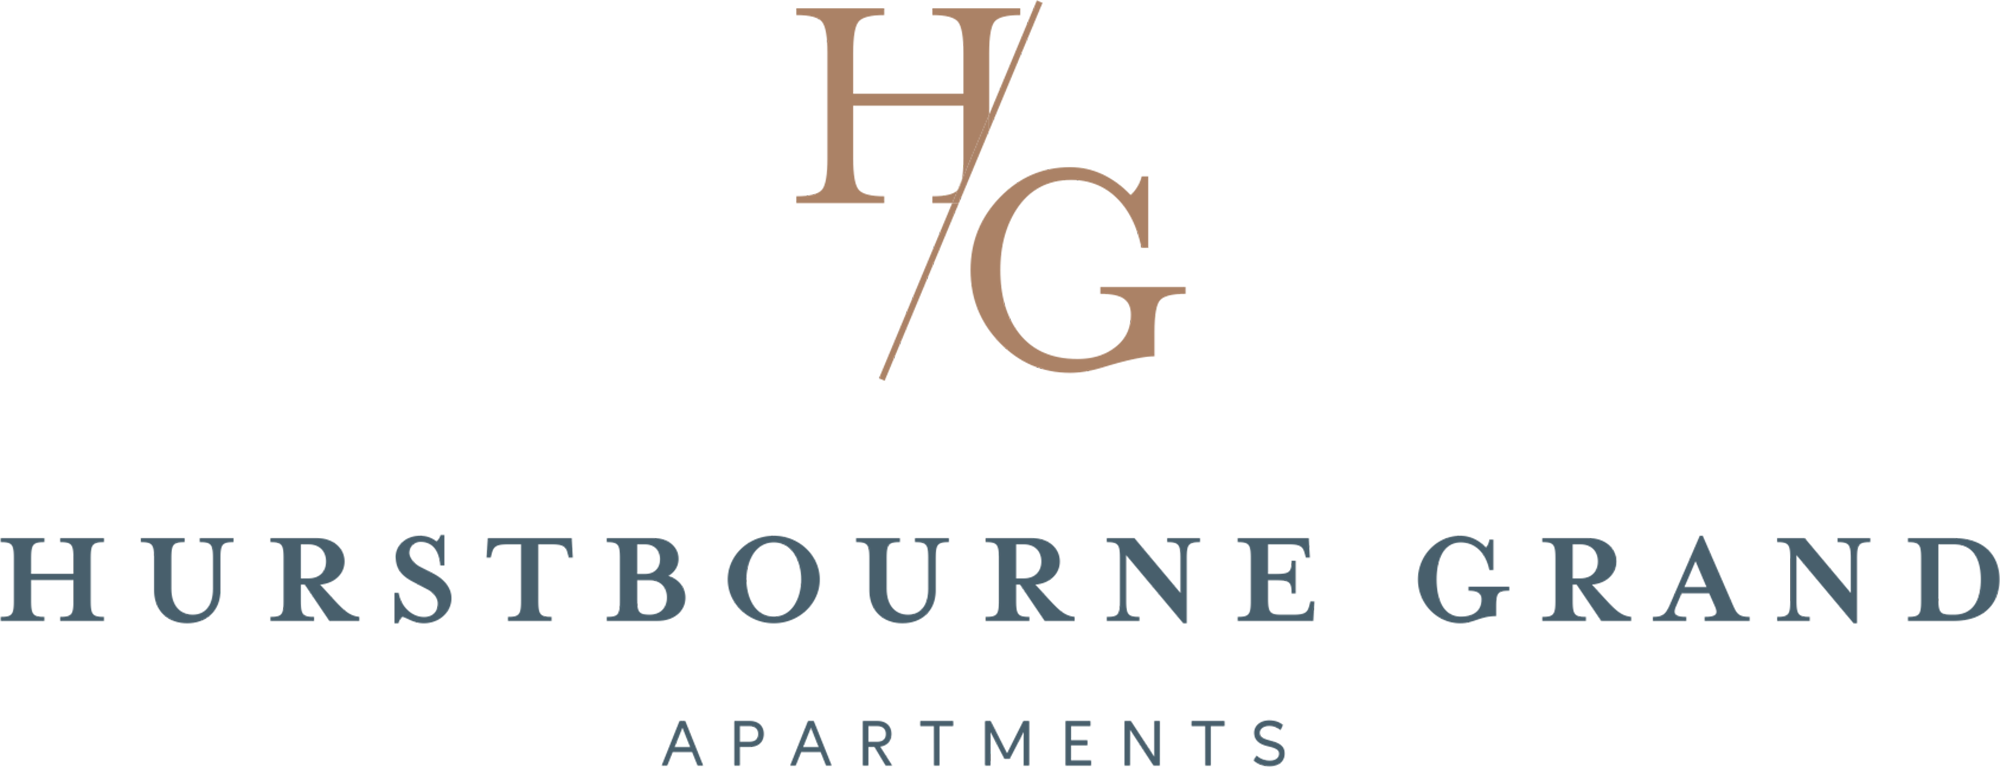 Hurstbourne Grand Apartments Logo